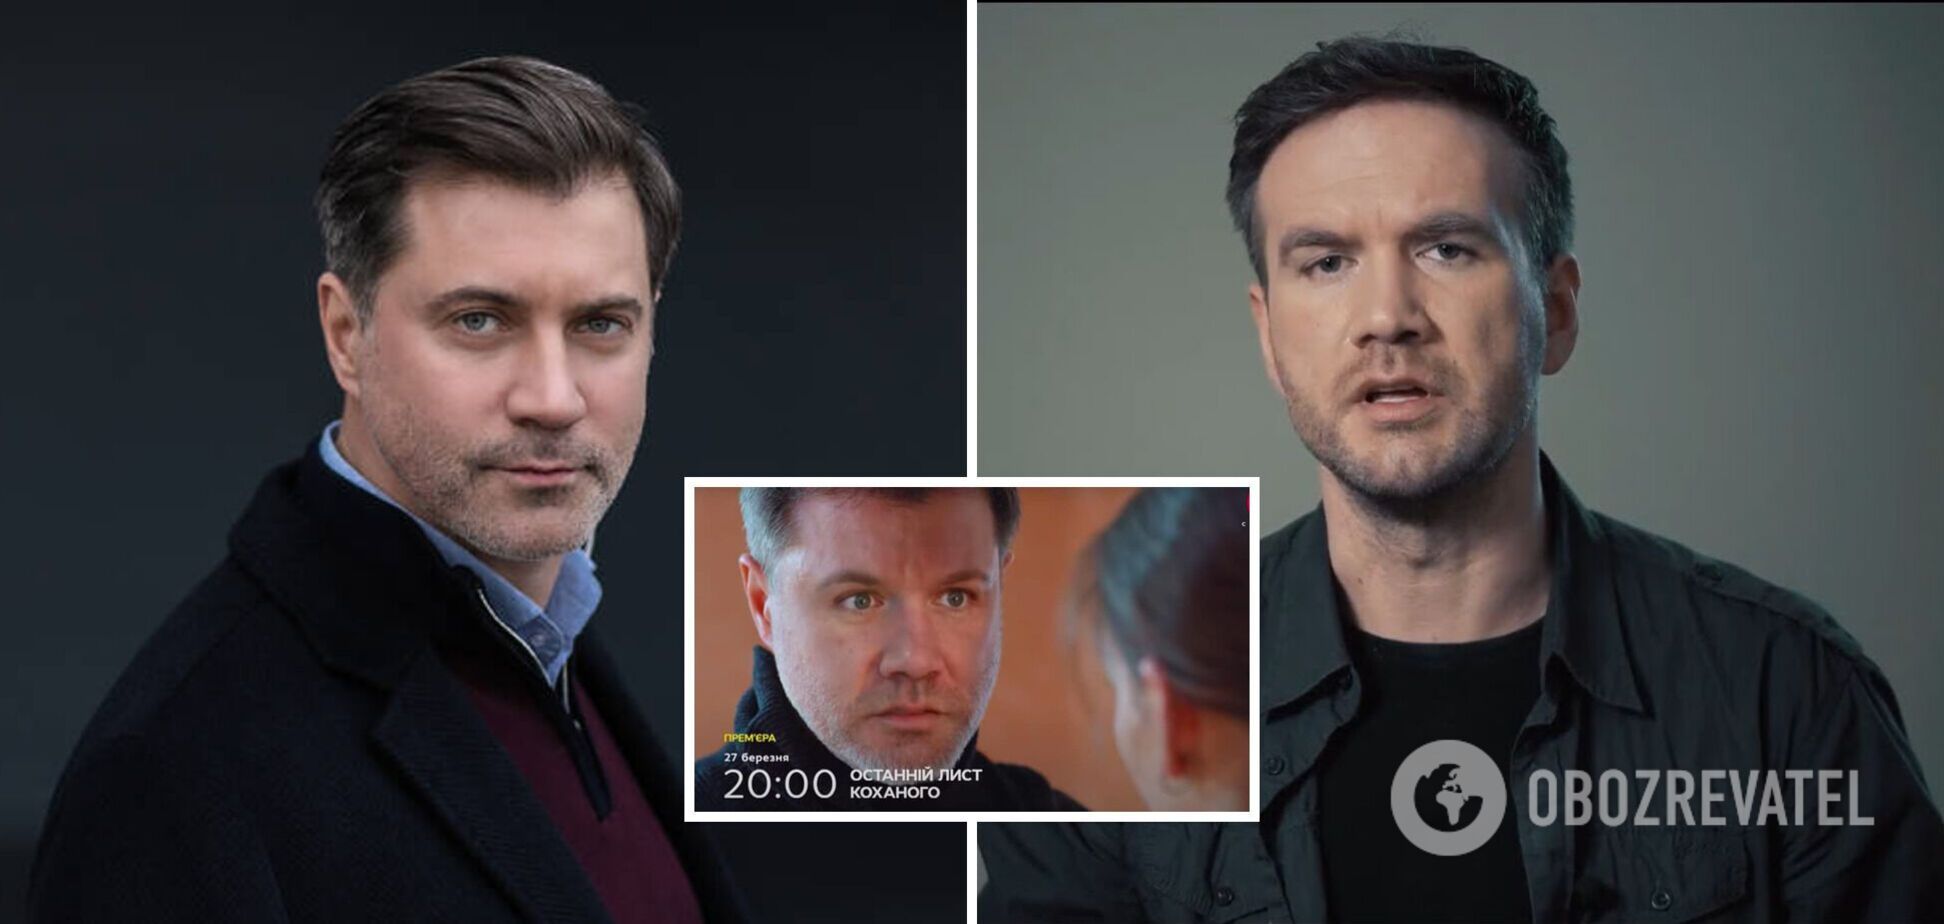 Після скандалу з 'заміною обличчя' на СТБ відклали показ серіалу з російськими акторами